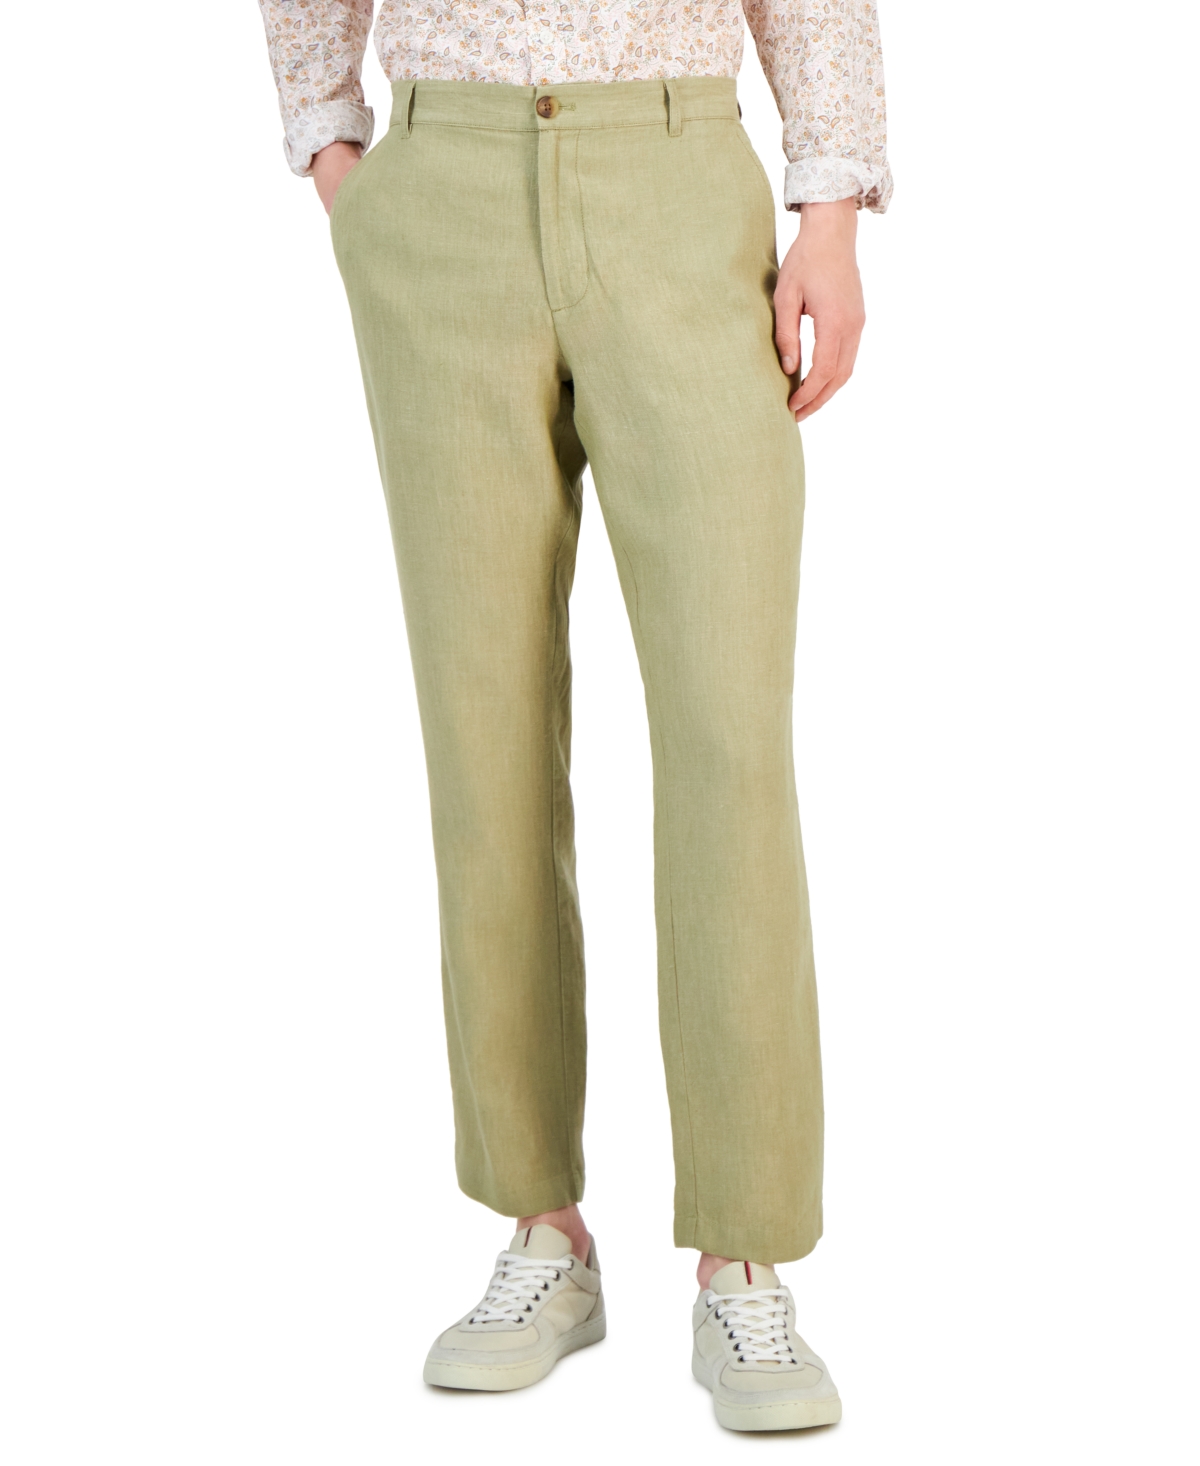 Club Room Men's 100% Linen Pants, Created for Macy's - Macy's